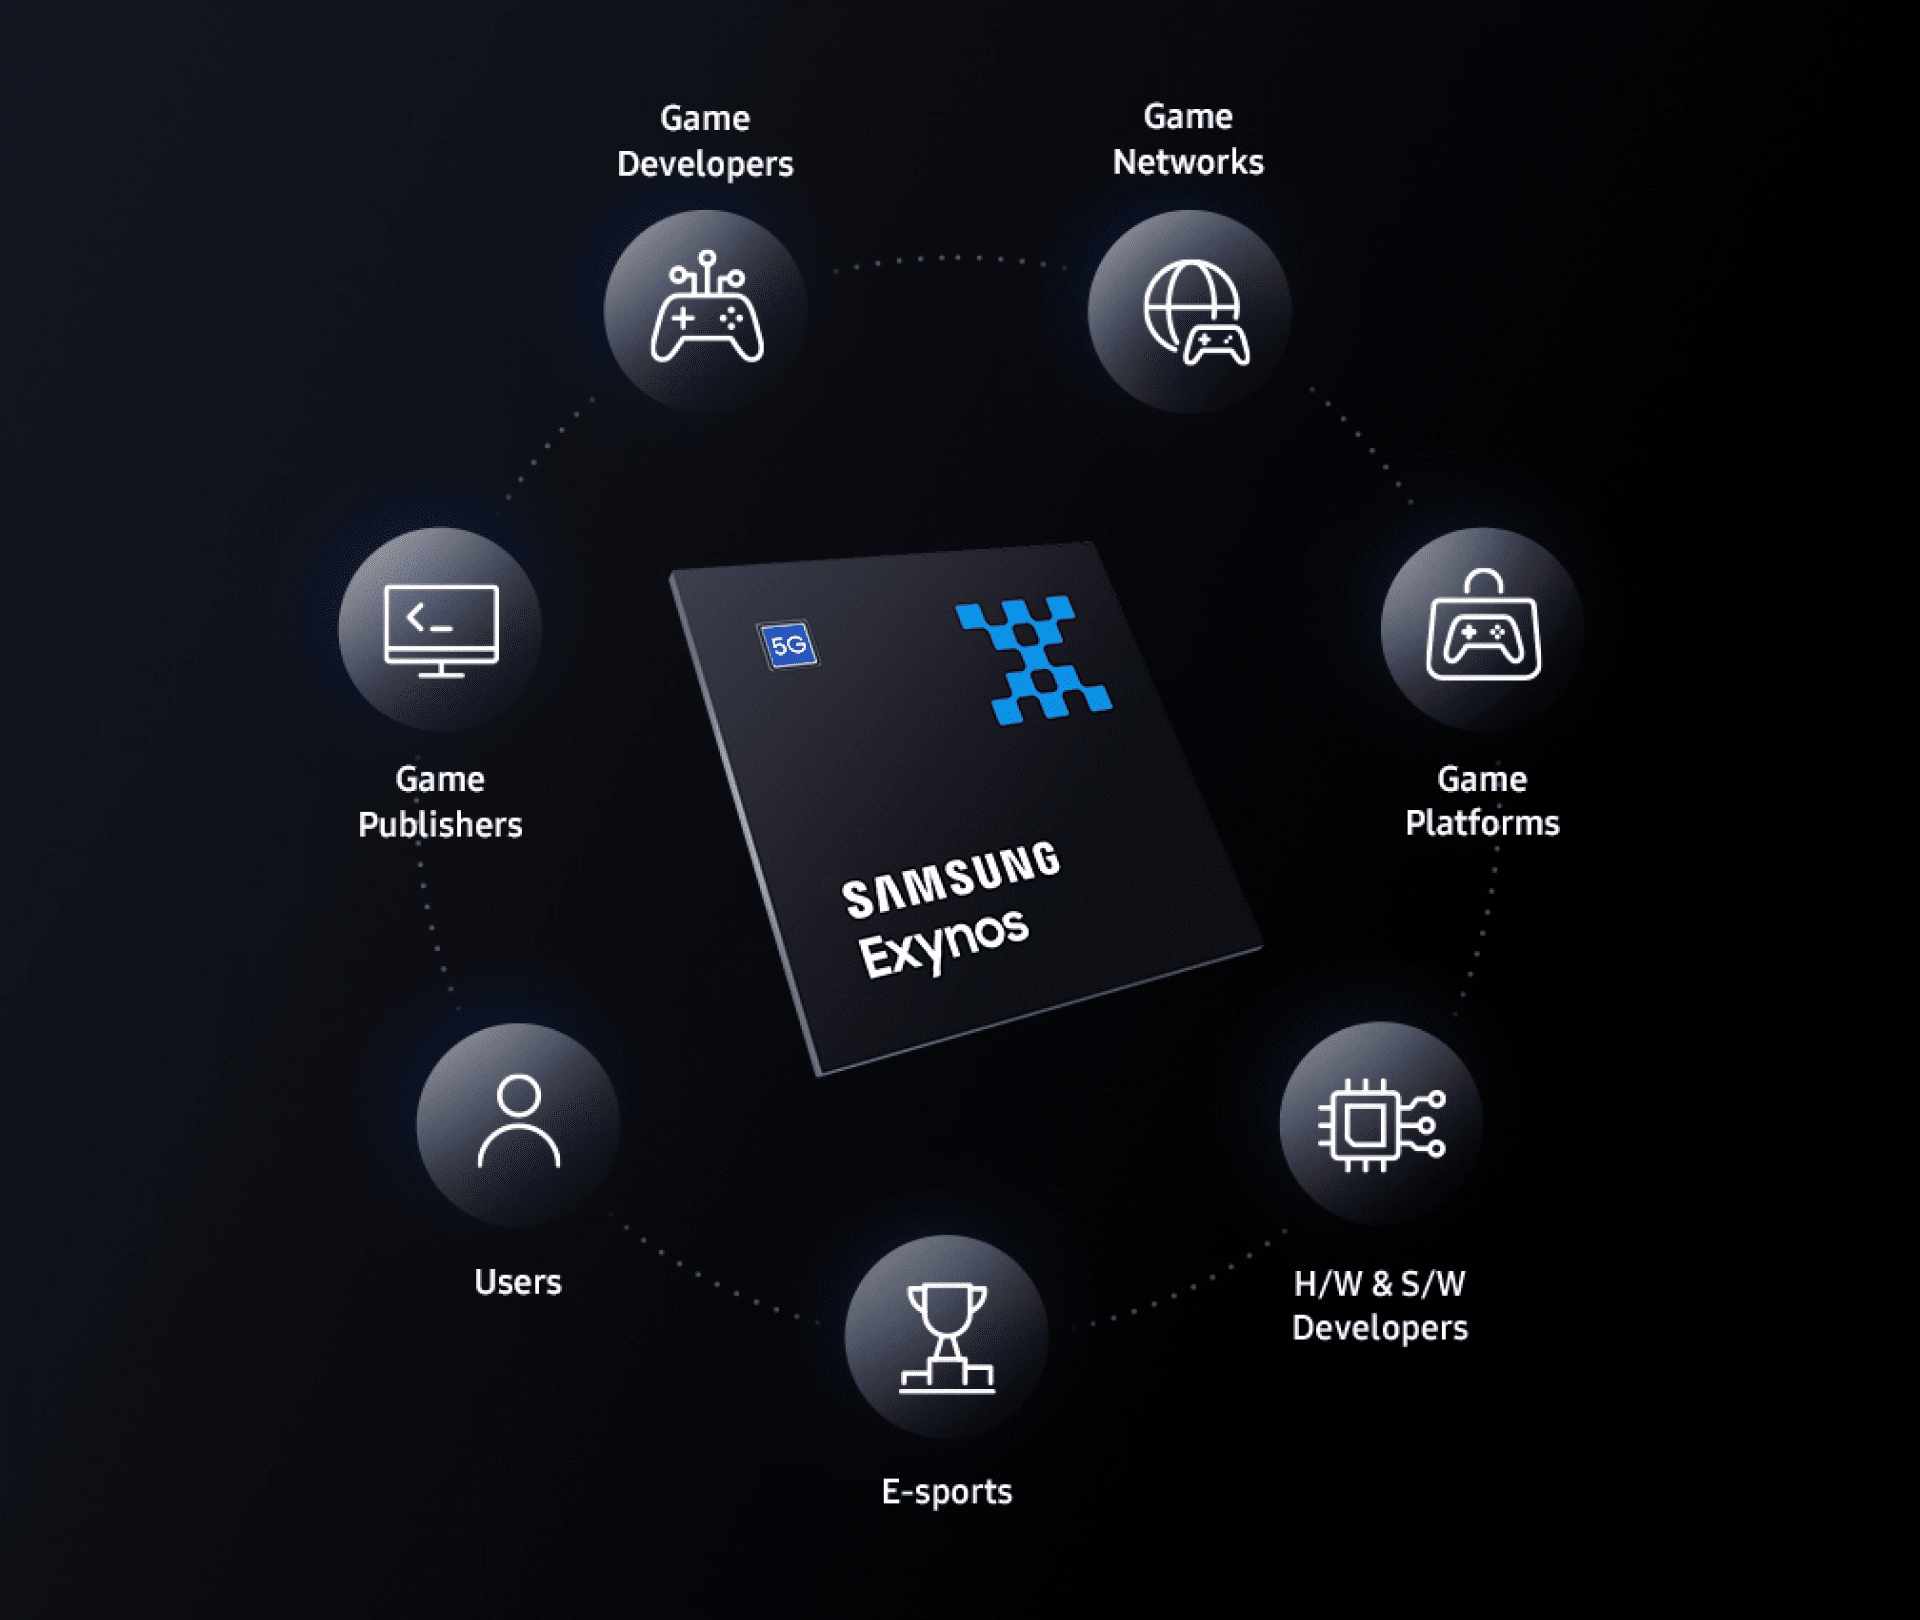 三星半导体的Exynos正在扩大包括游戏发行商、开发商、平台和用户等移动端游戏生态系统内的合作。